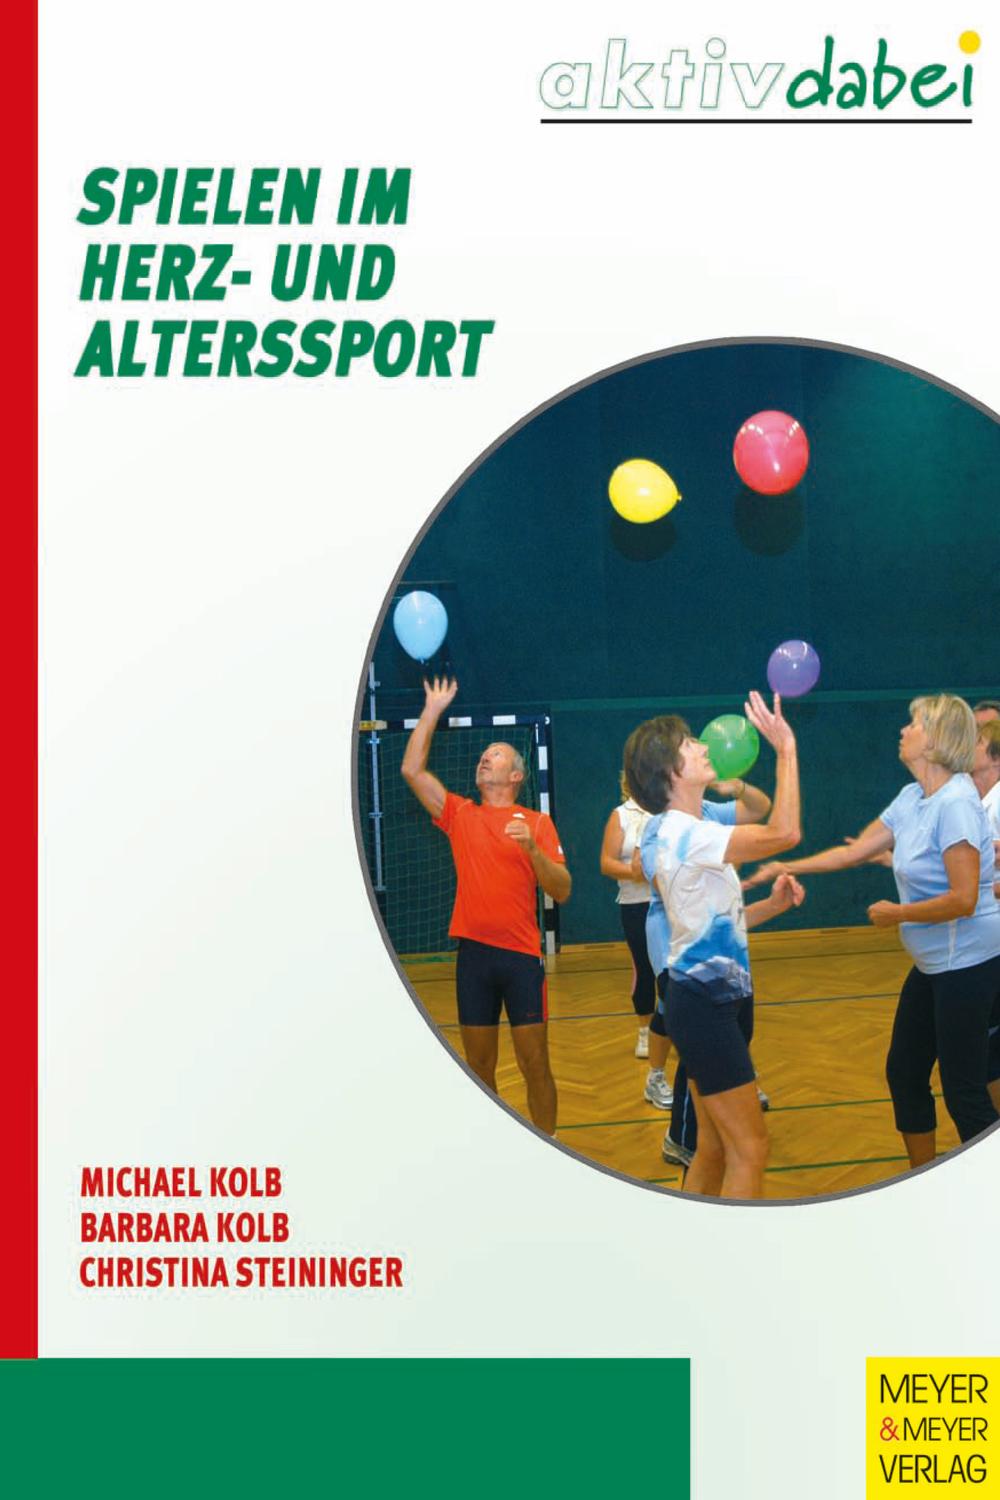 Spielen im Herz- und Alterssport - Michael Kolb, Christina Steininger, Barbara Kolb